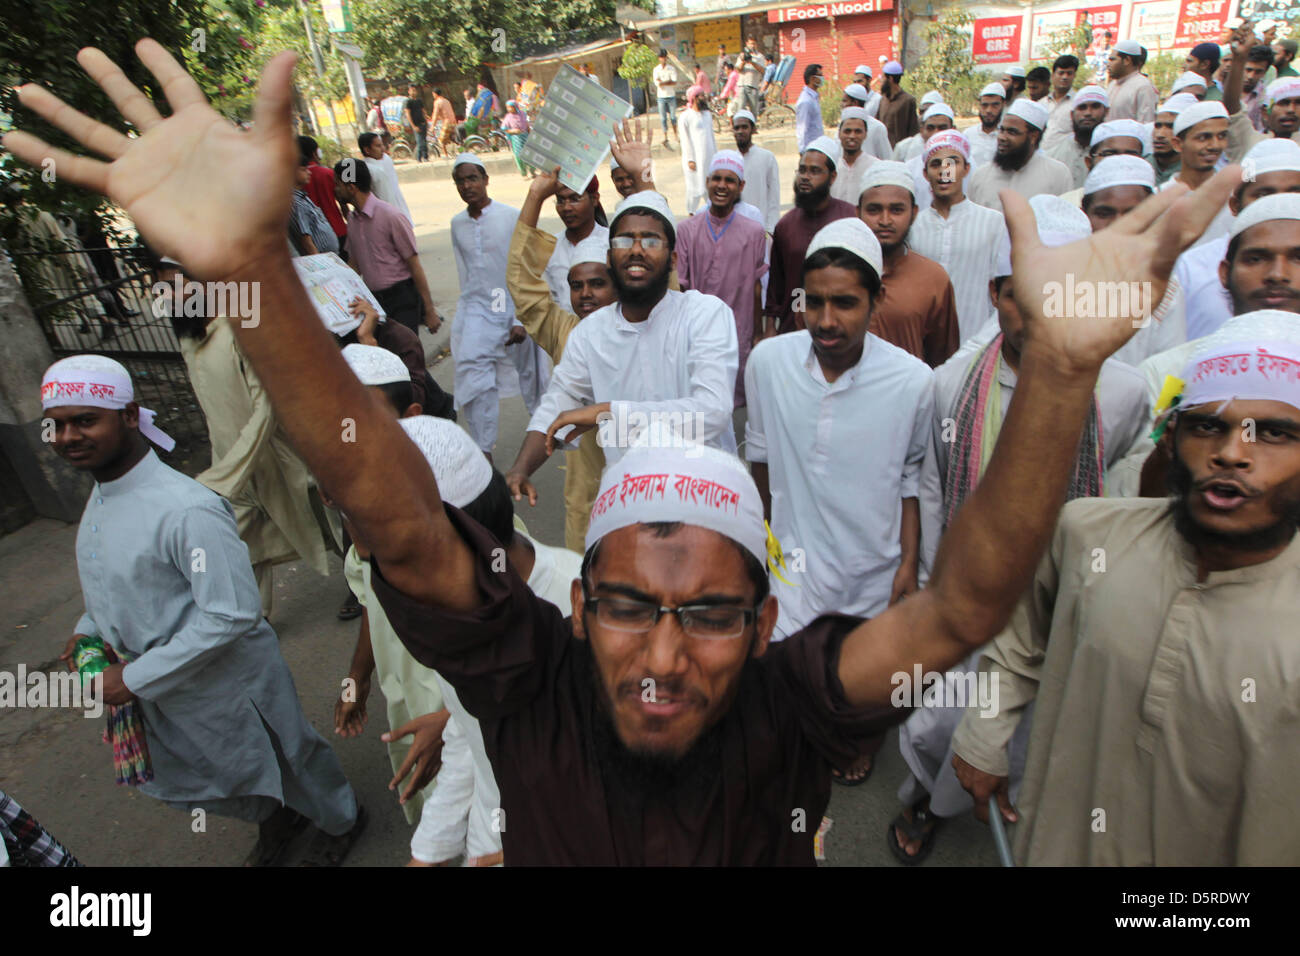 Dhaka, Bangladesh. El 8 de abril de 2013. Activistas de la organización islamista Hefajat-e-Islam gritar eslóganes como rallye durante una huelga en toda la nación en Dhaka el 8 de abril de 2013, Hefajat-e-Islam han llamado a una huelga nacional para presionar al parlamento nacional de promulgar una ley sobre blasfemia, destinada a perseguir los bloggers acusado de insultar al Islam y al Profeta Mahoma en el país de mayoría musulmana. Â©Monirul Alam (Crédito de la imagen: Crédito: Monirul Alam/ZUMAPRESS.com/Alamy Live News) Foto de stock